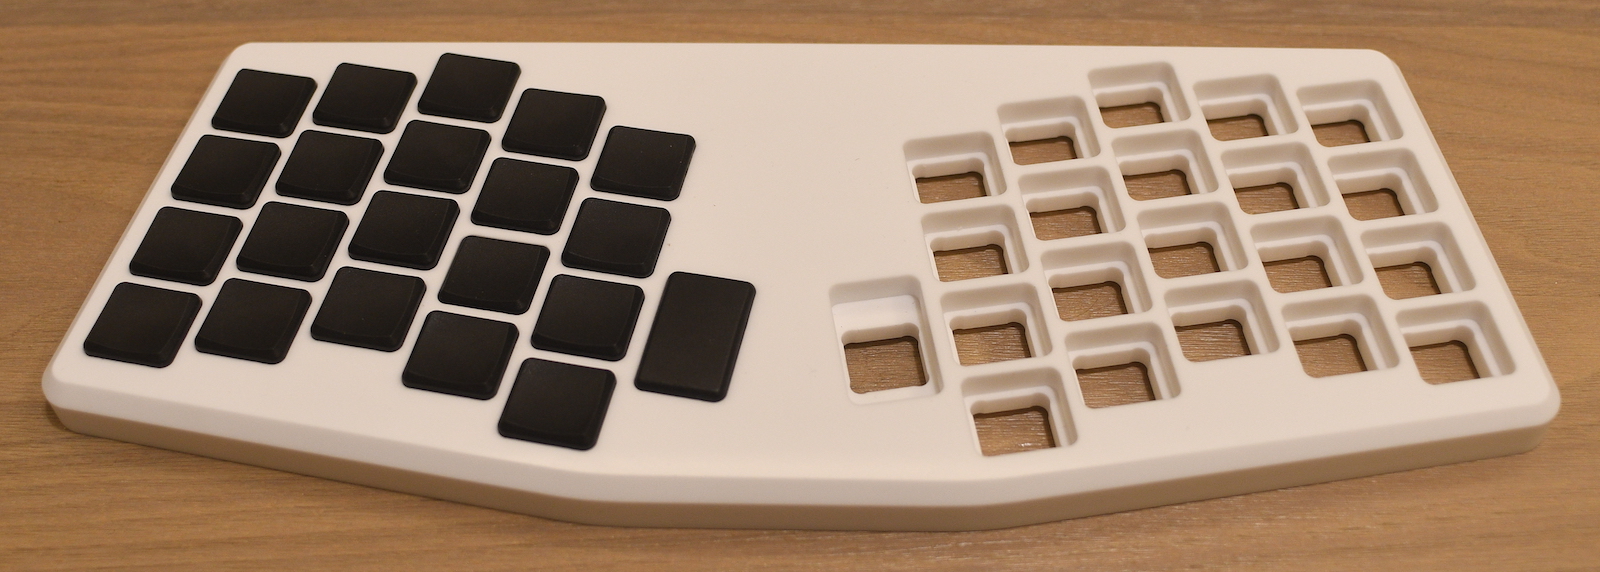 Atreus keyboard